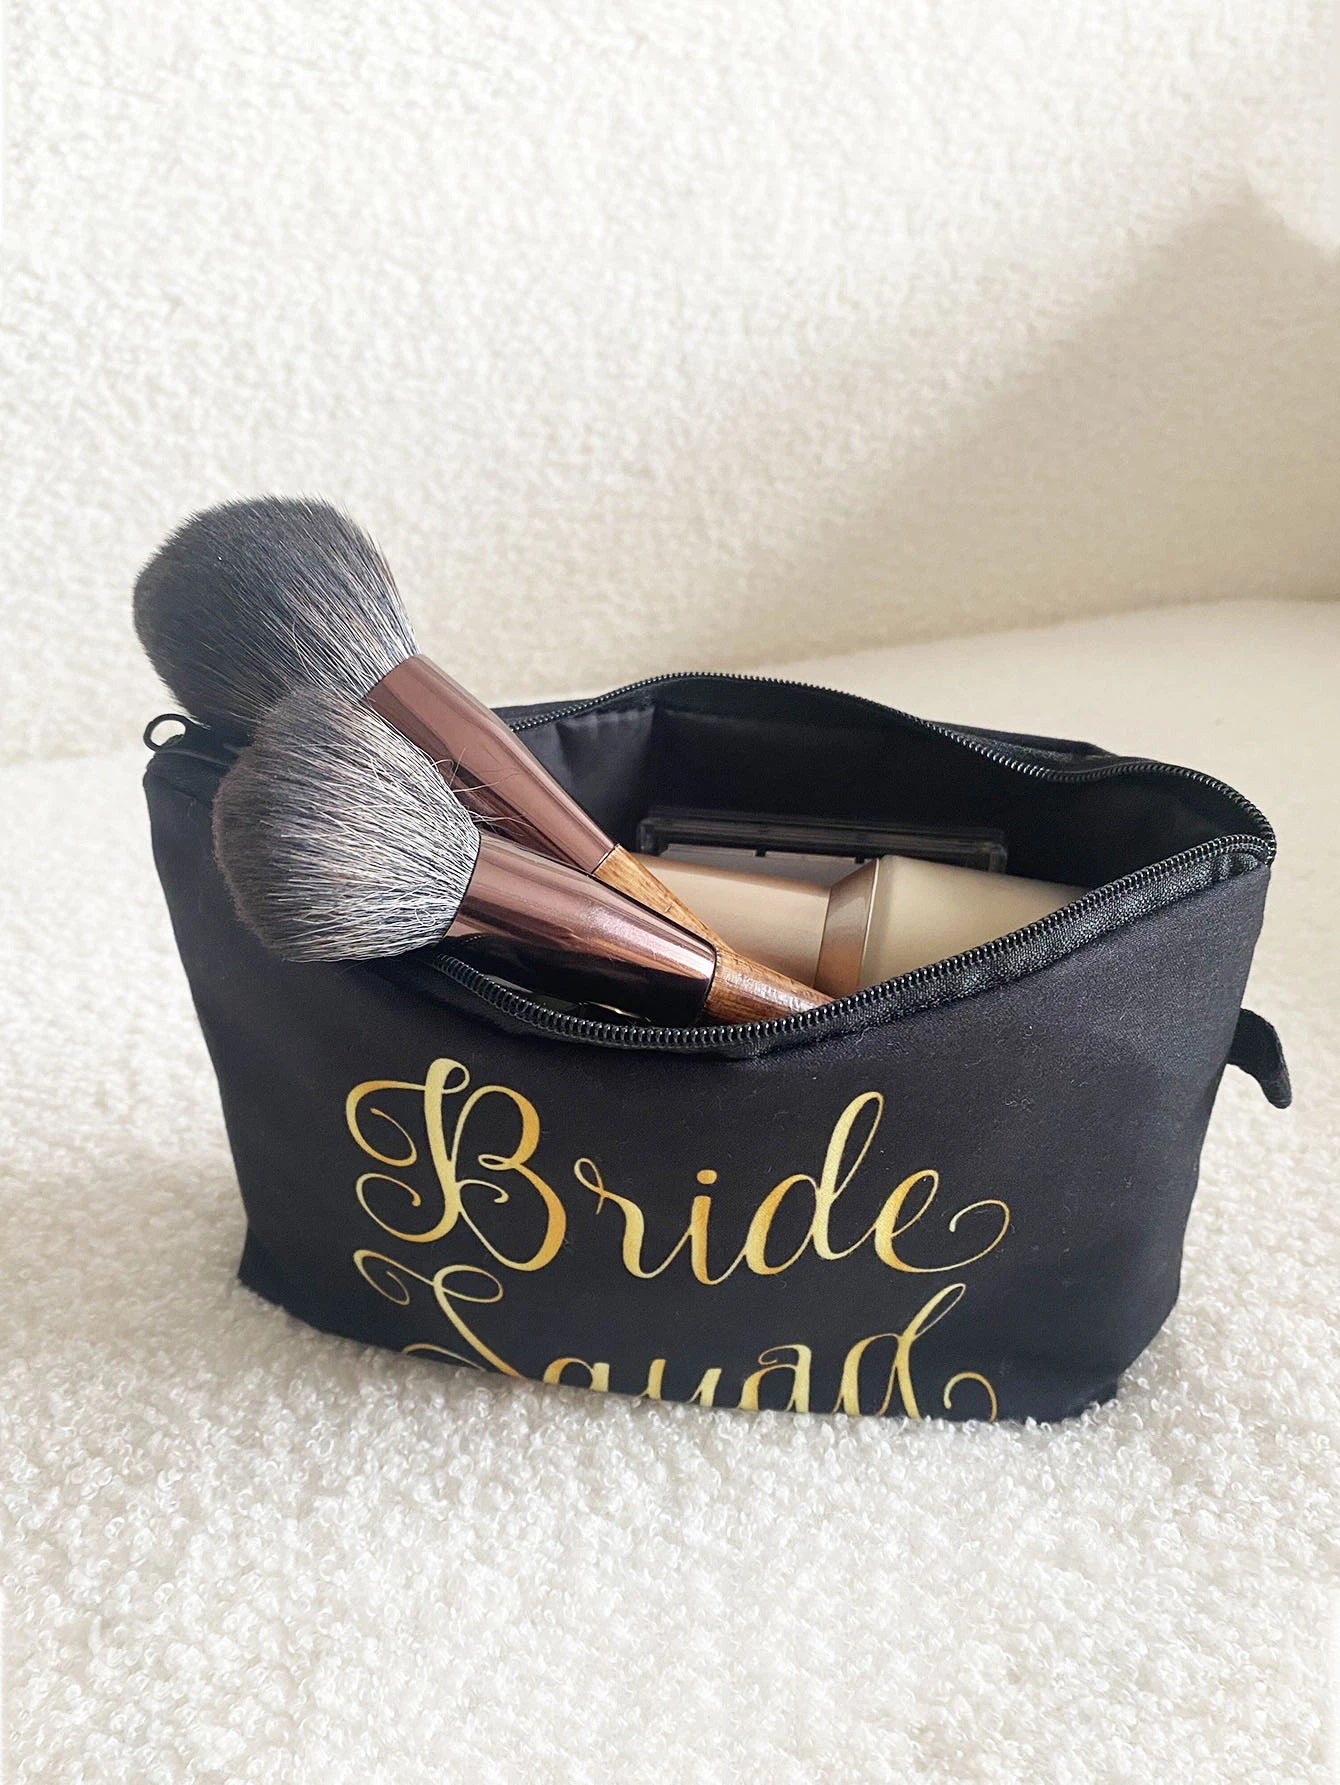 Bride Squad Cosmetic Bag